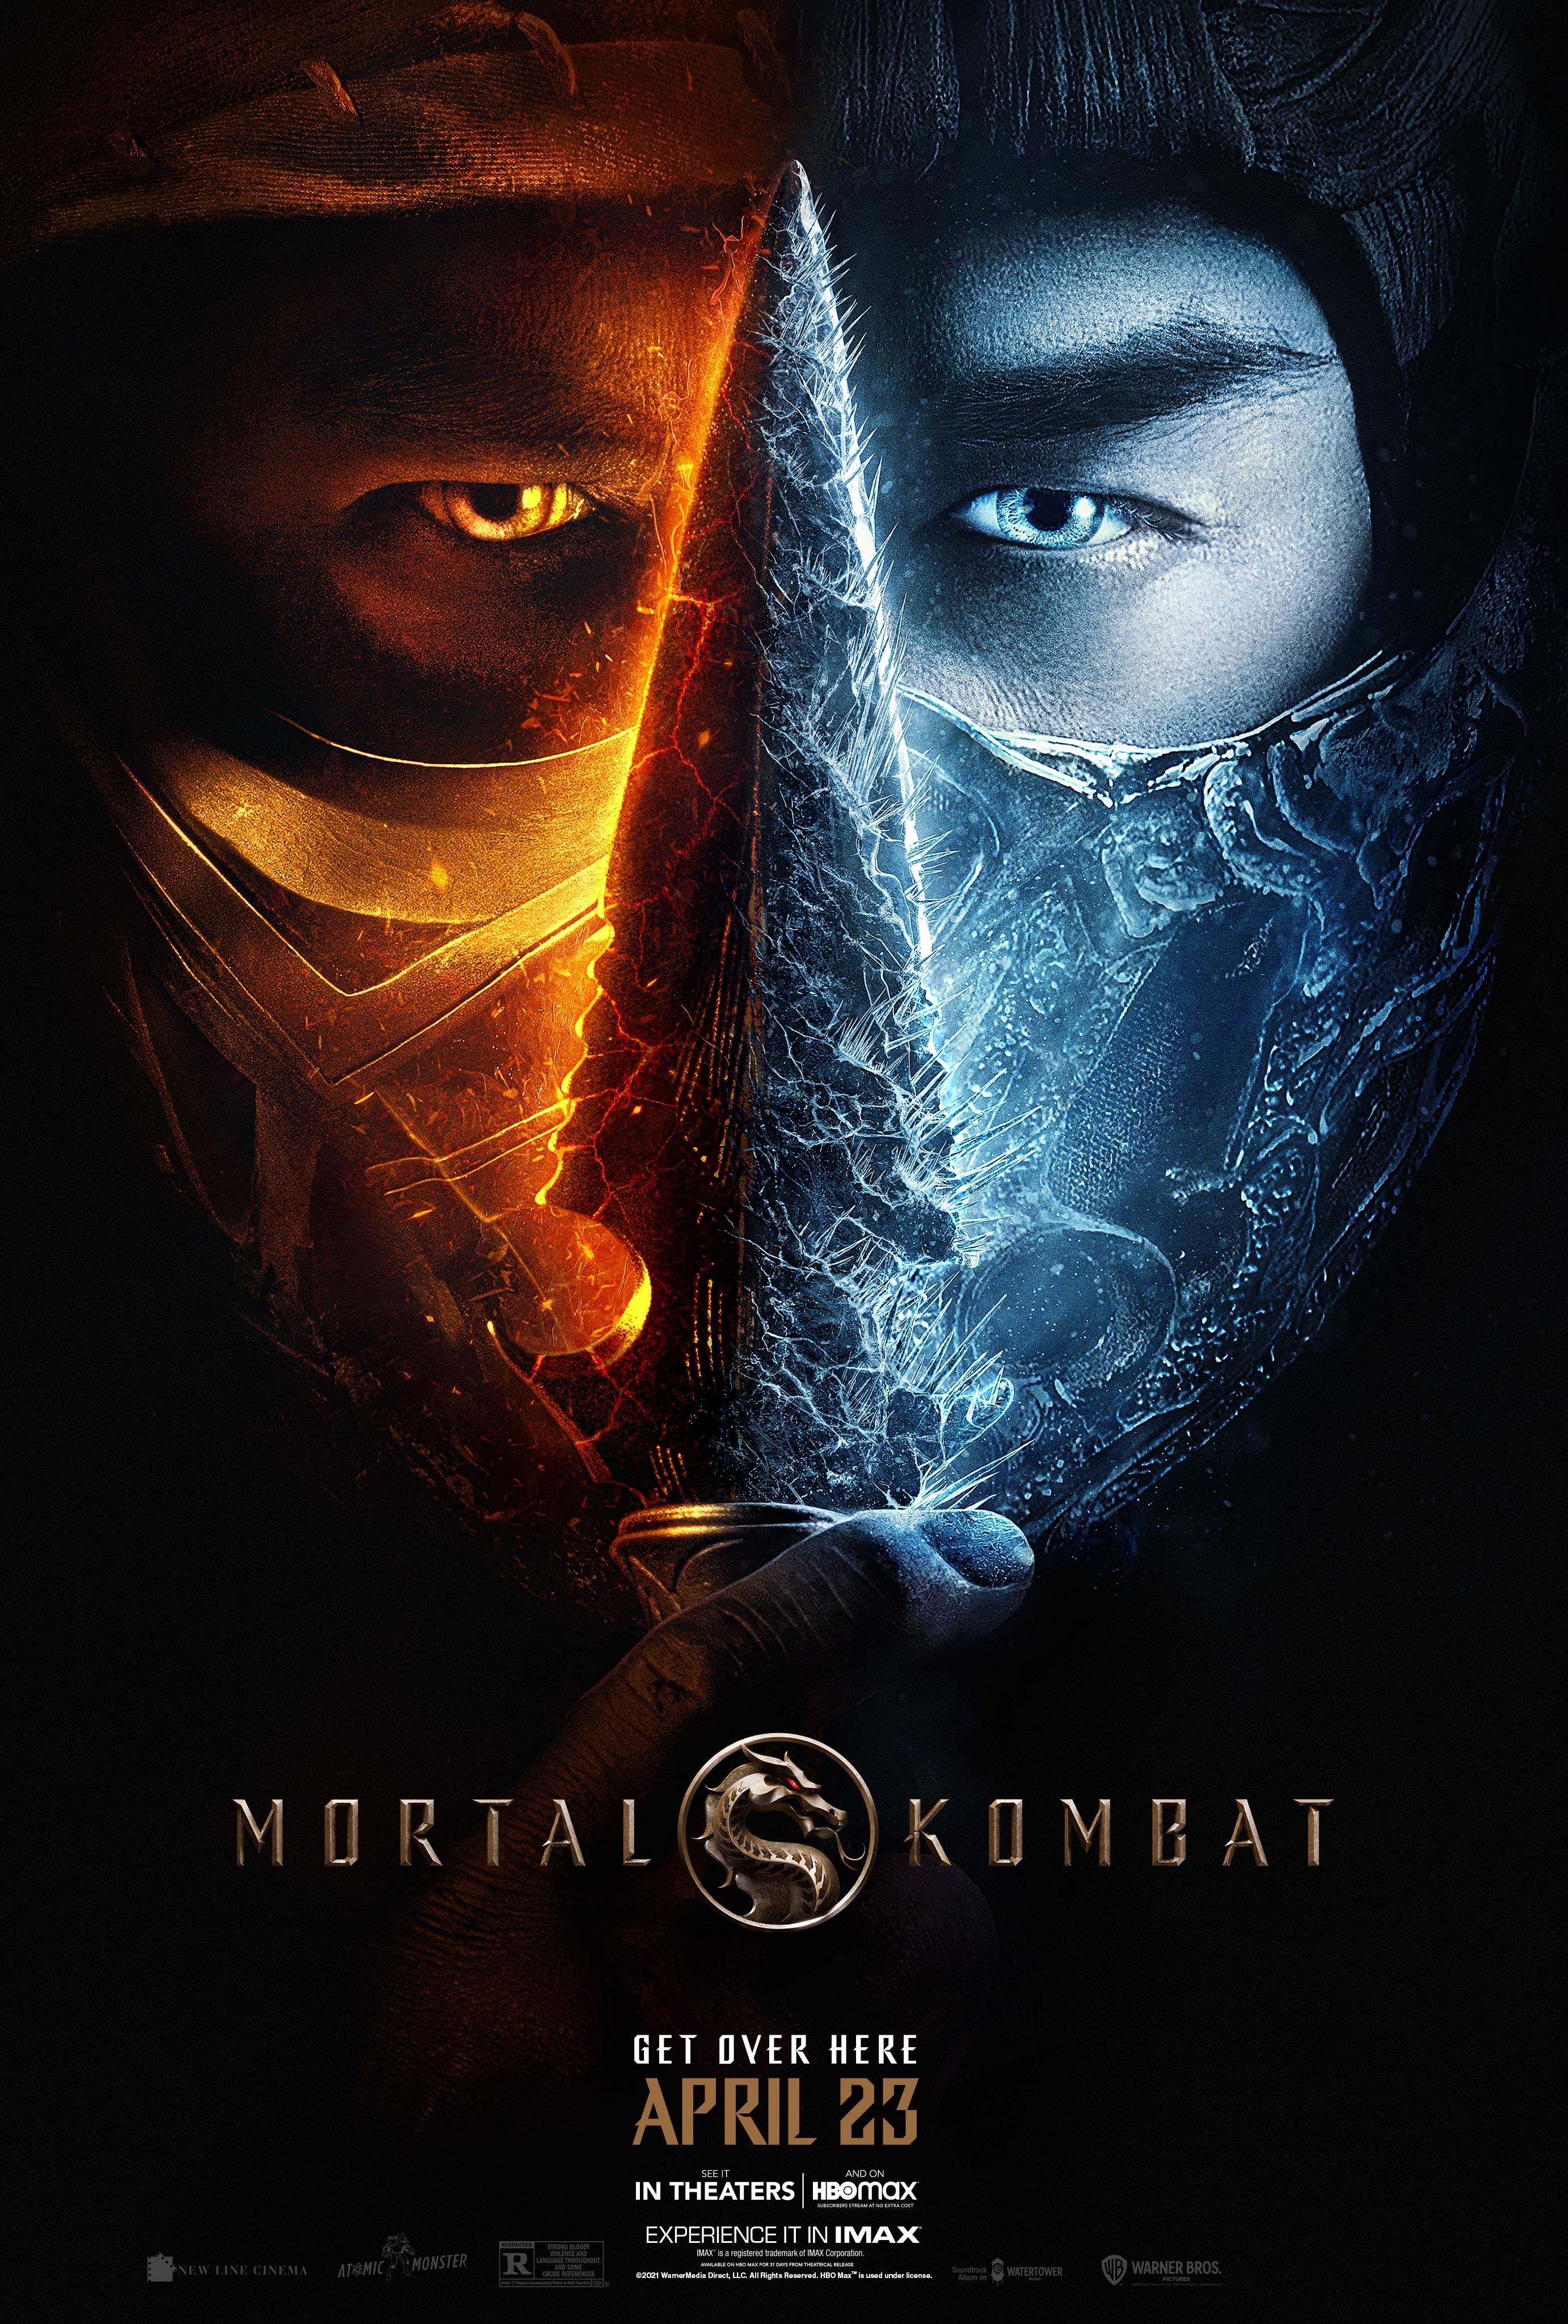 Stiahni si Filmy s titulkama Mortal Kombat (2021)[Webrip][1080p] = CSFD 77%